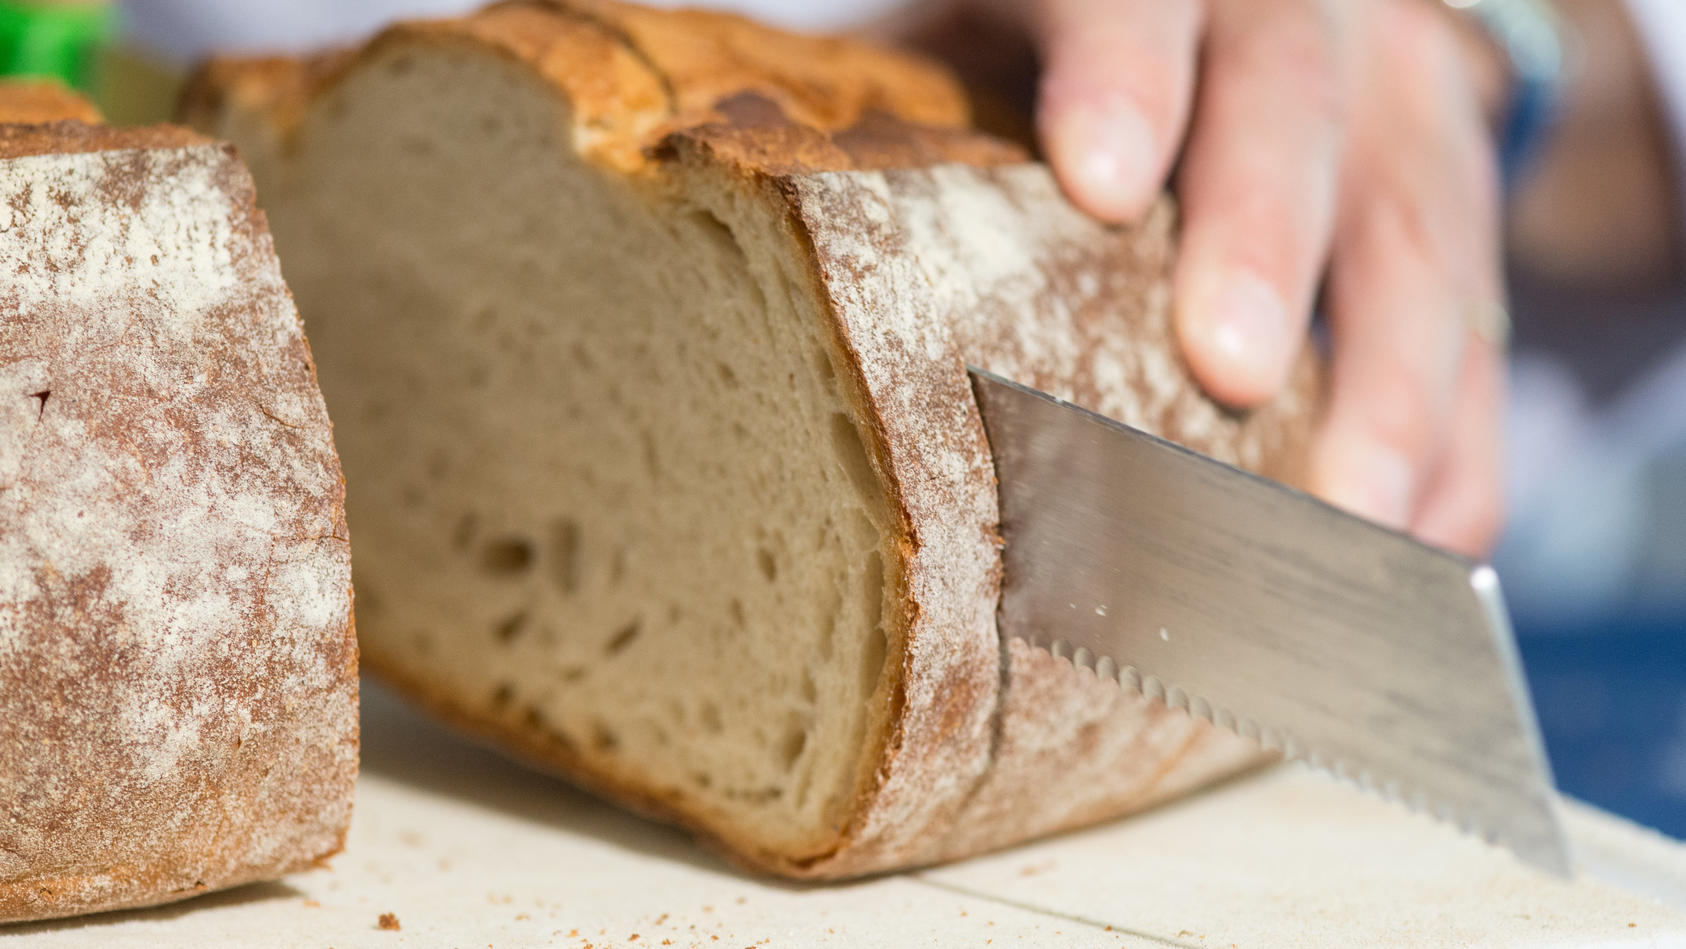 Kostet Brot bald 10 Euro? Bauernverband rechnet mit drastischem Preisanstieg